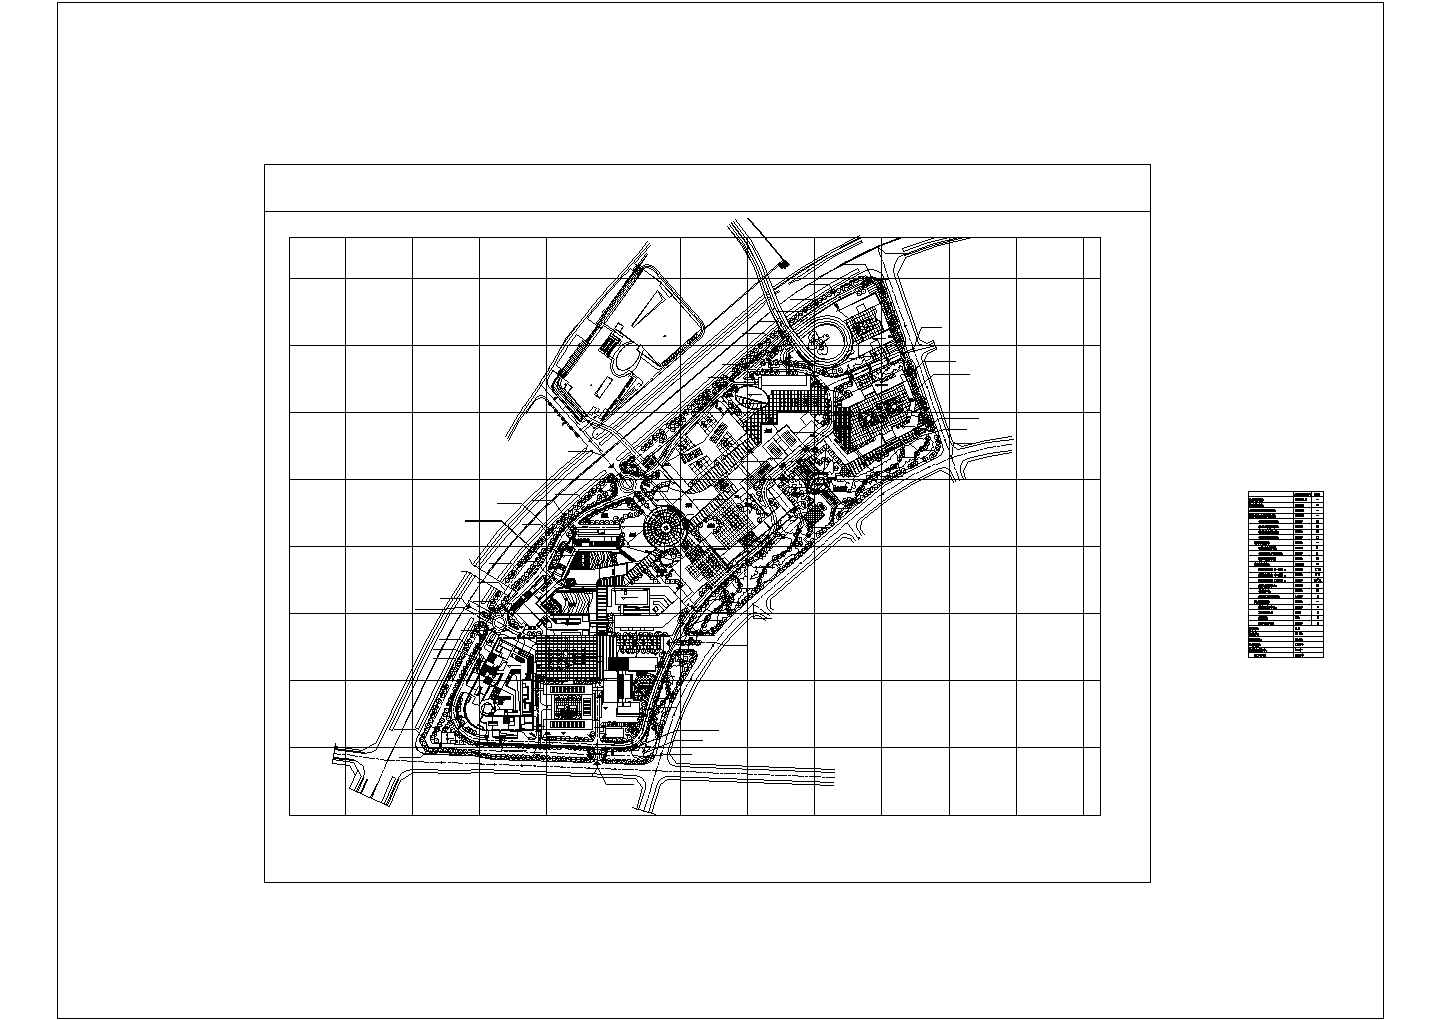 深圳大学校园南区规划设计总平面布置图